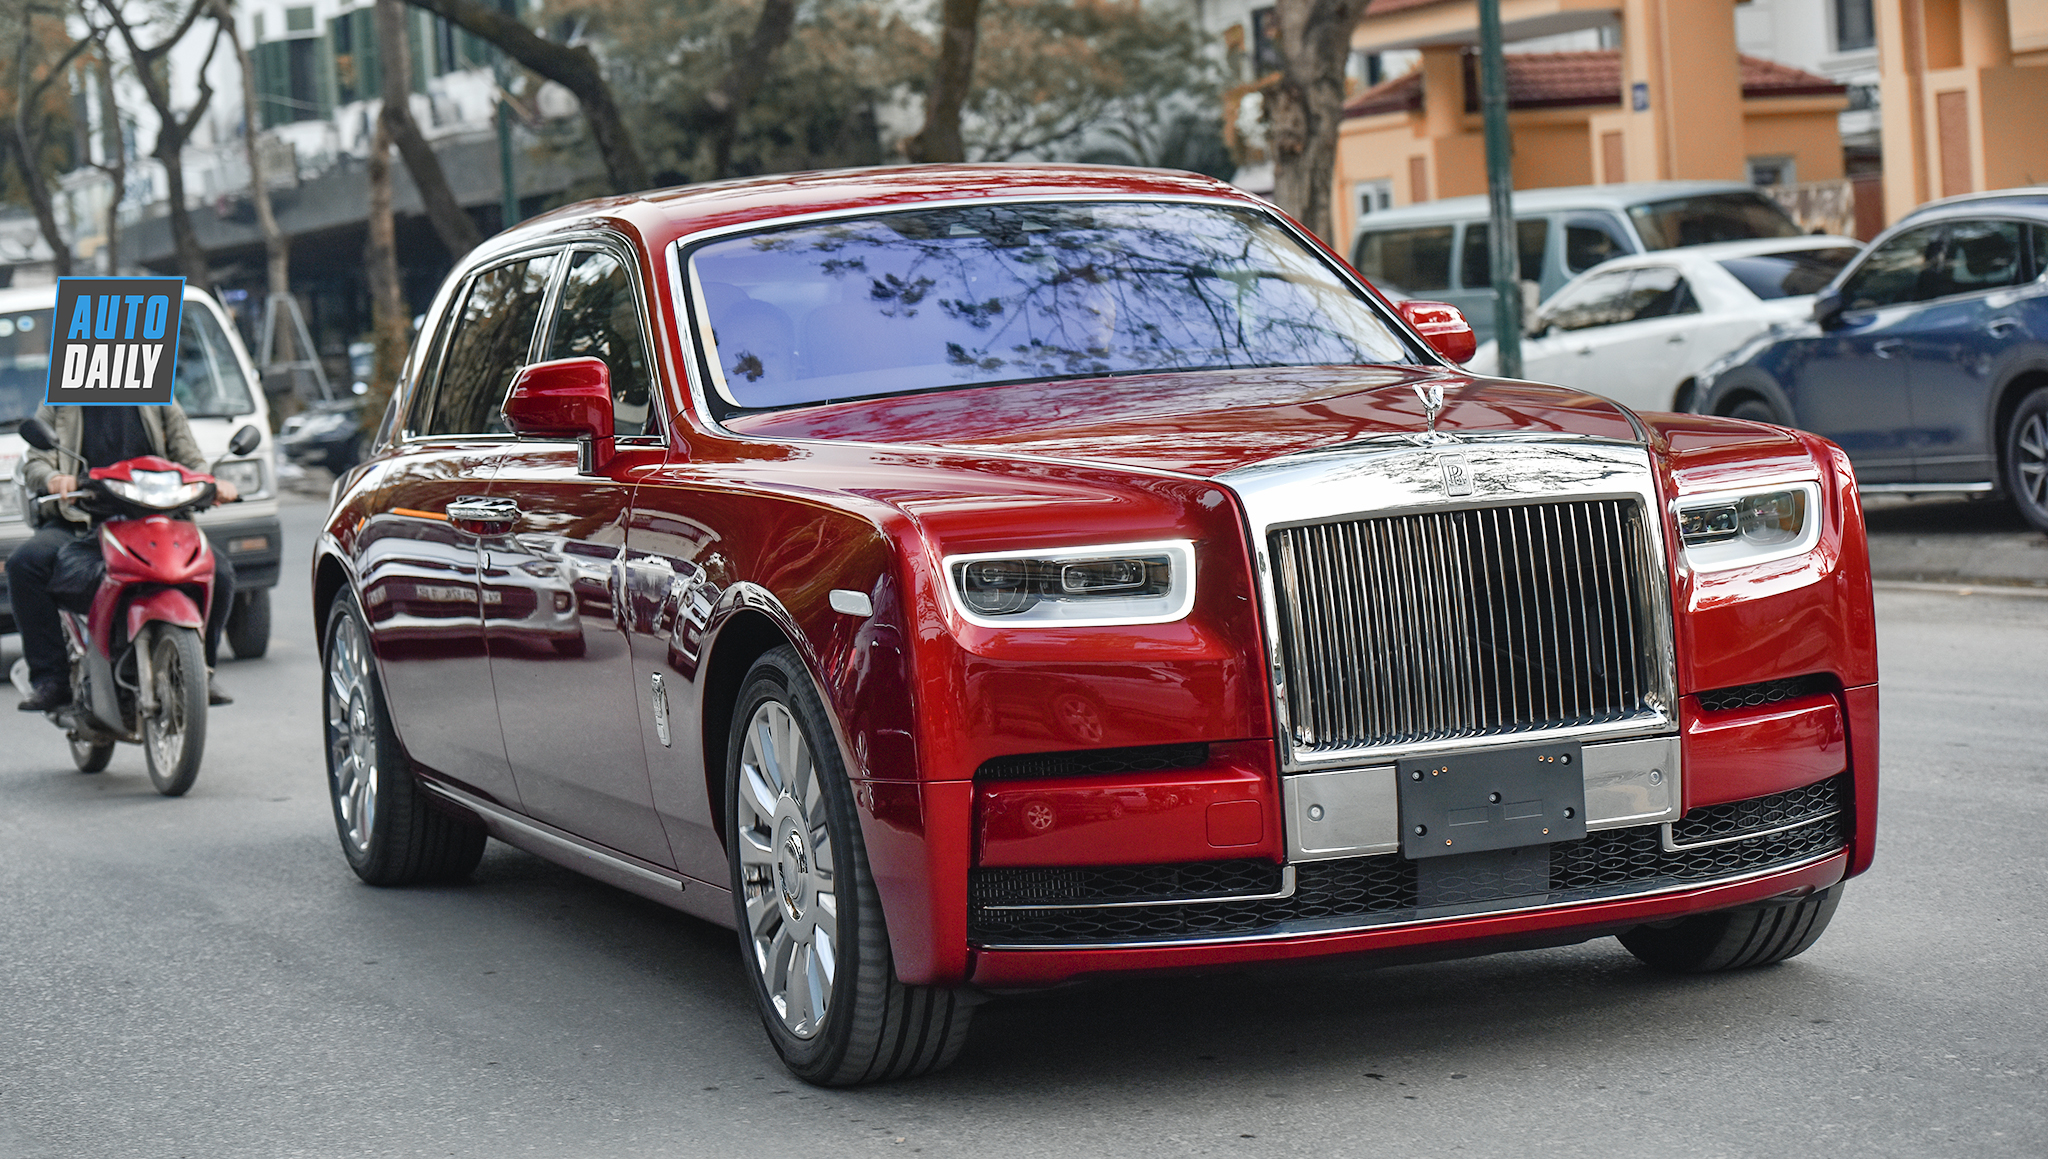 Chùm ảnh Rolls-Royce Phantom VIII hơn 70 tỷ dạo phố HN